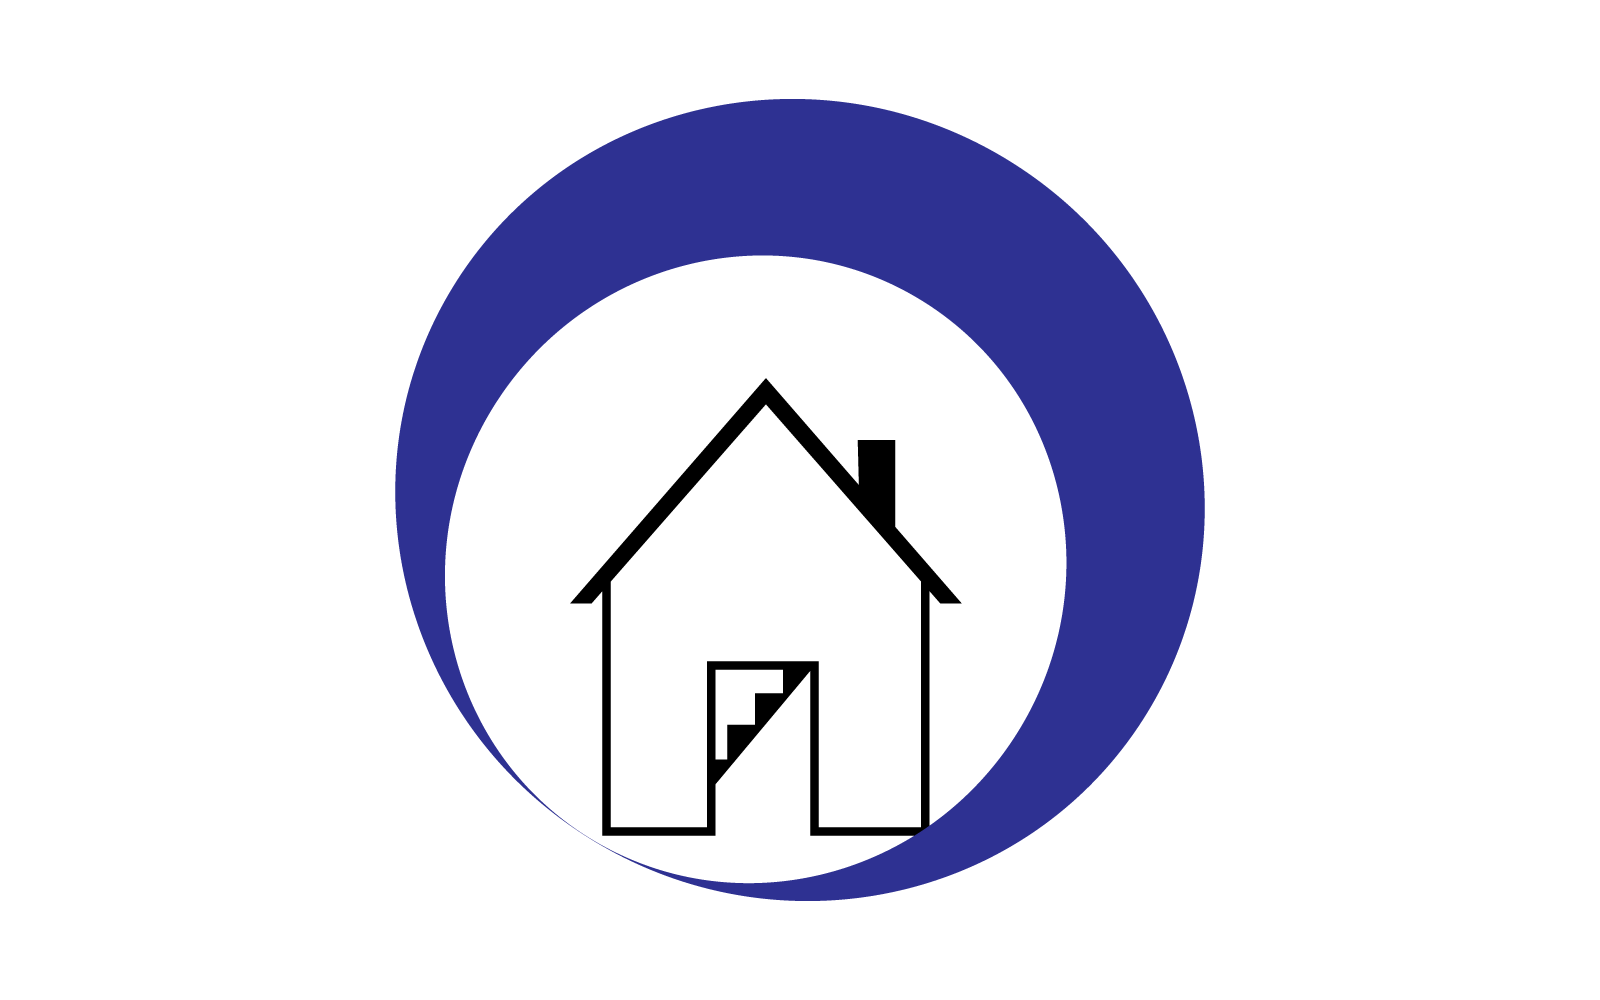 H Letter Property illustration Logo Template